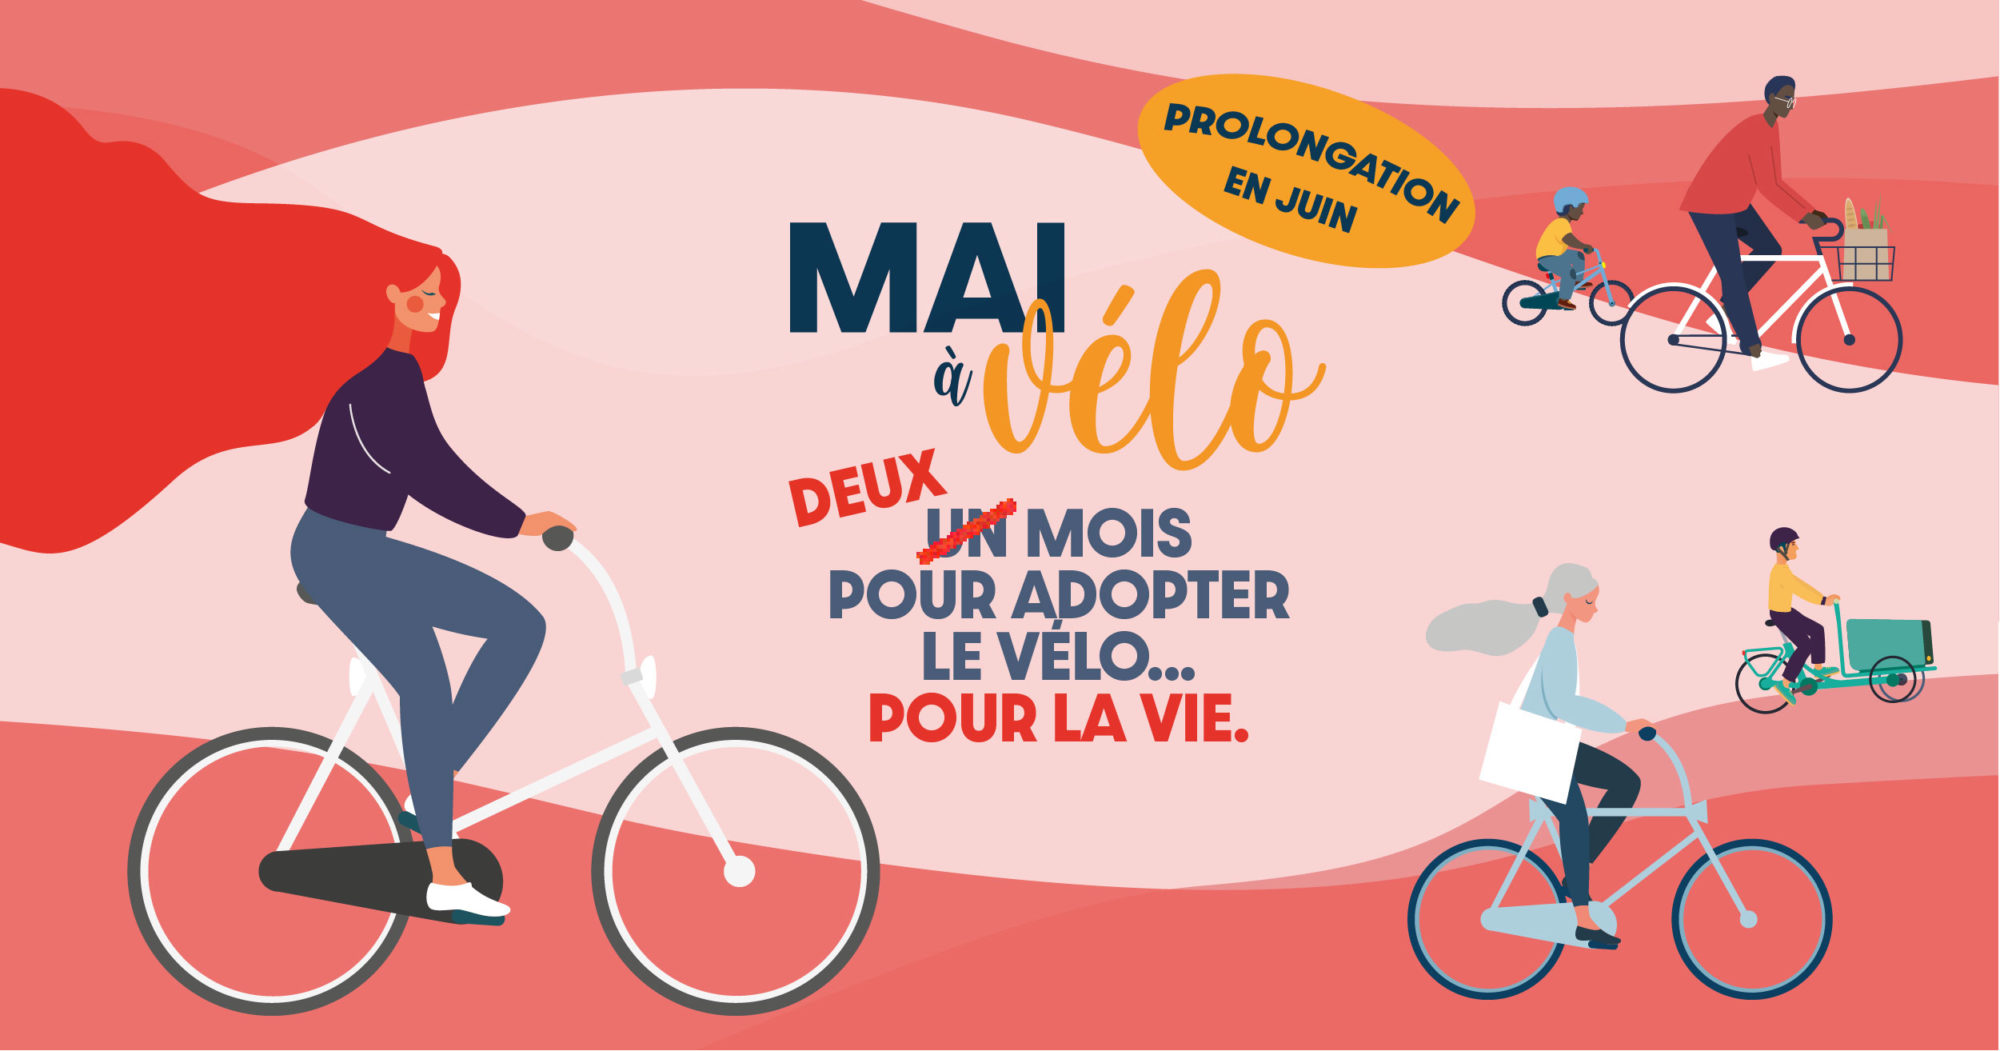 Balade à vélo pour se remettre en selle et adopter le vélo pour la vie !